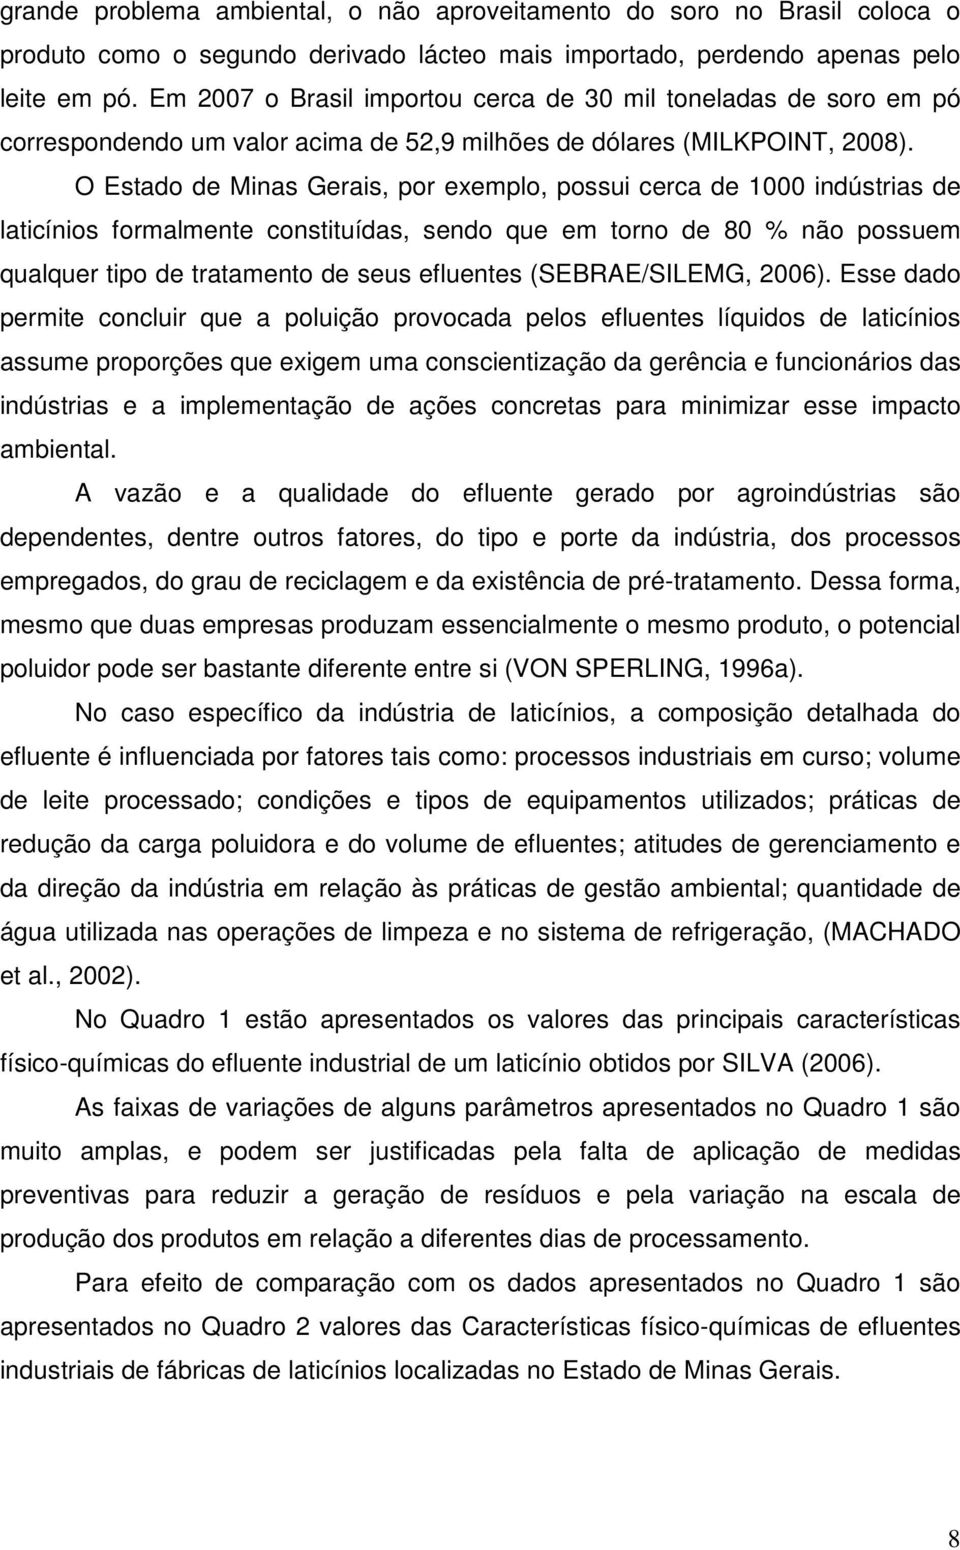 O Estado de Minas Gerais, por exemplo, possui cerca de 1000 indústrias de laticínios formalmente constituídas, sendo que em torno de 80 % não possuem qualquer tipo de tratamento de seus efluentes